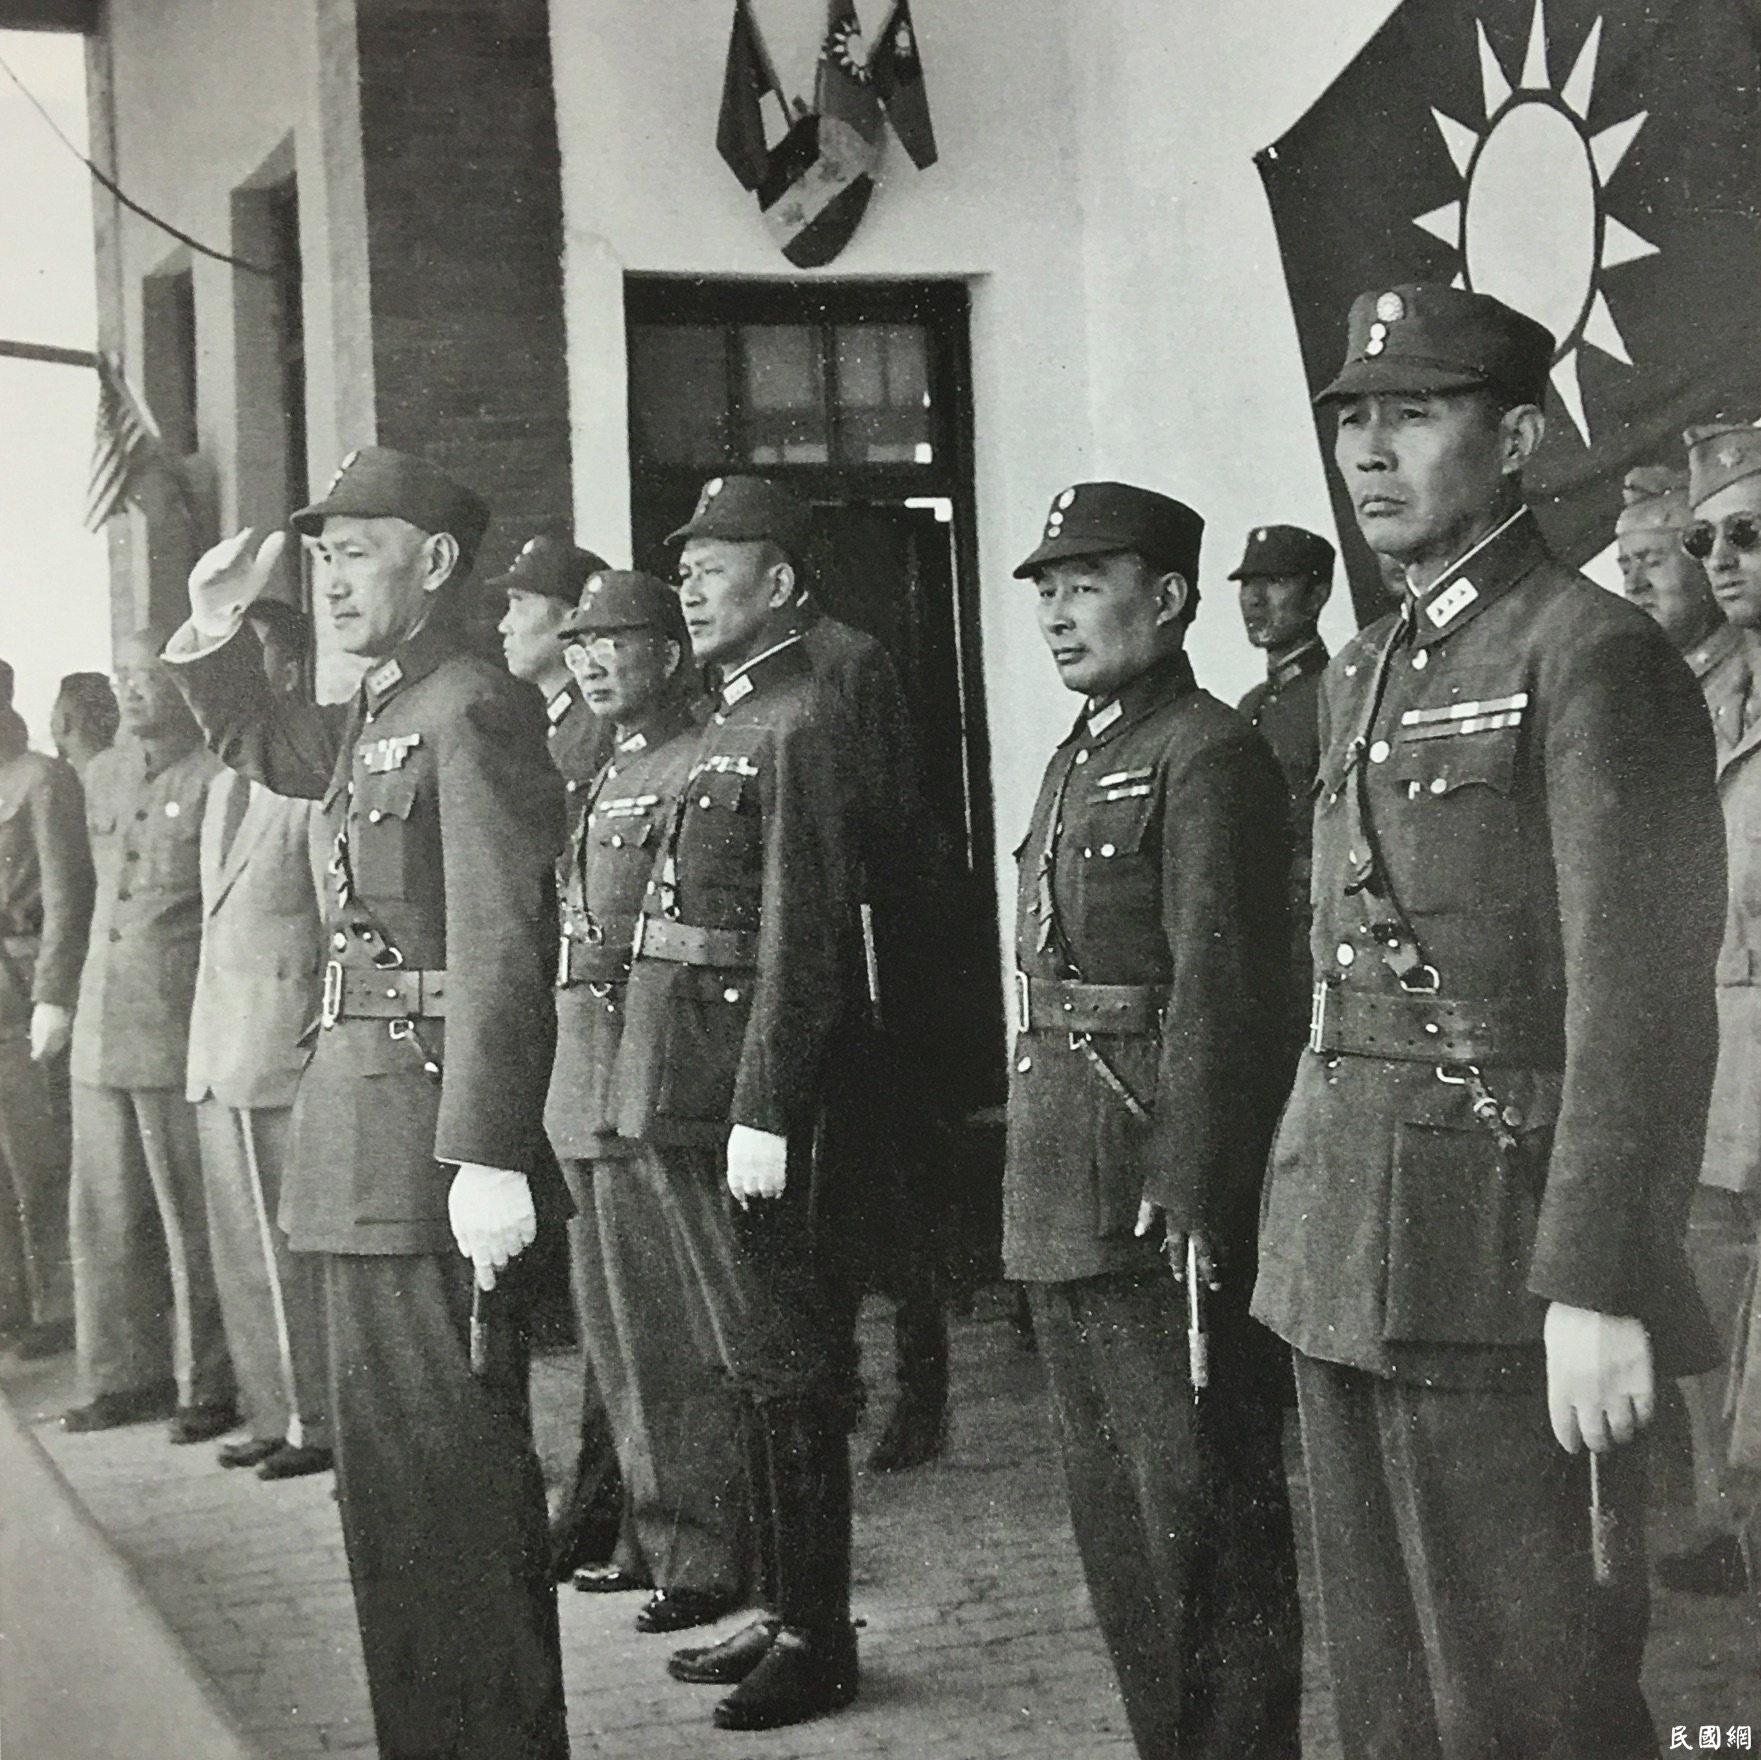 蒋介石日记——还原一段历史的真实